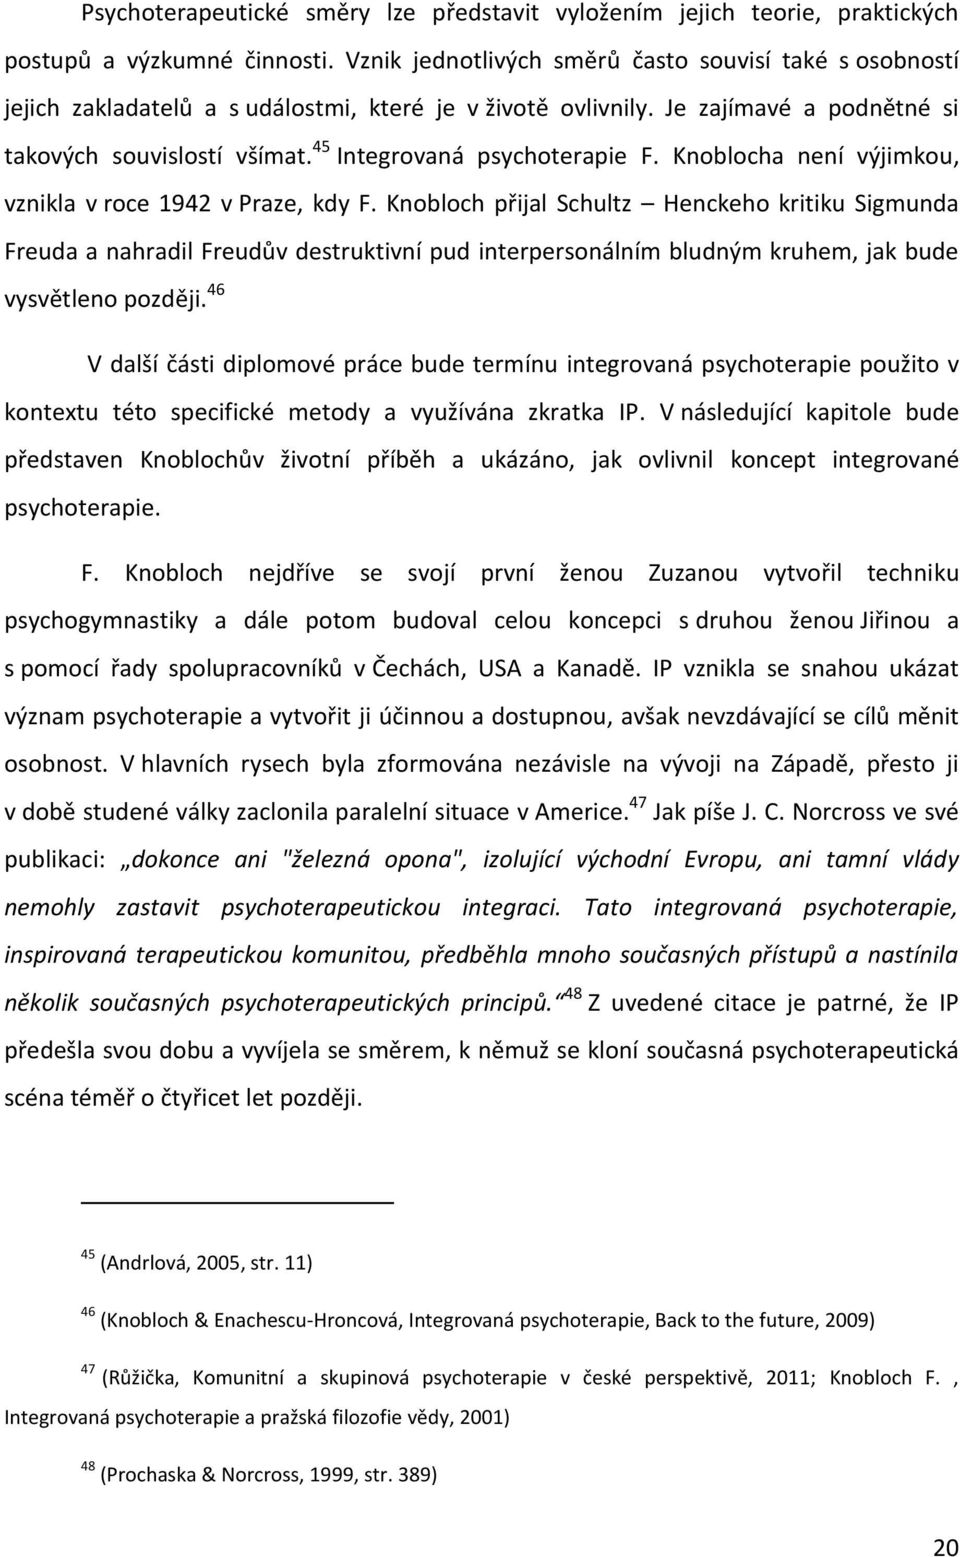 45 Integrovaná psychoterapie F. Knoblocha není výjimkou, vznikla v roce 1942 v Praze, kdy F.